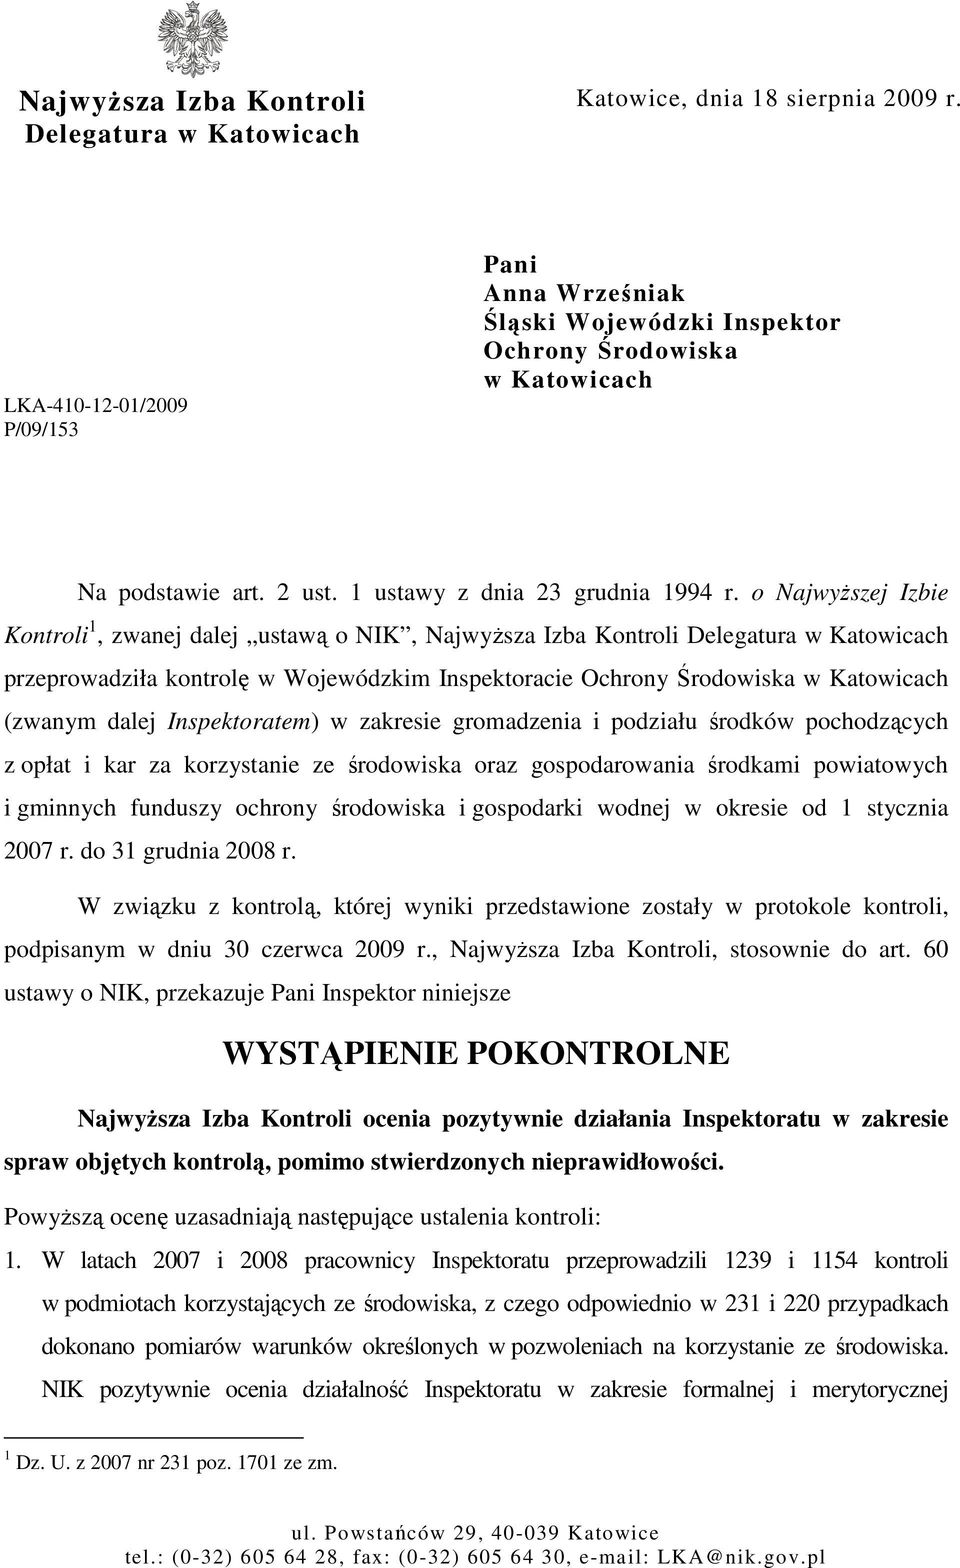 o NajwyŜszej Izbie Kontroli 1, zwanej dalej ustawą o NIK, NajwyŜsza Izba Kontroli Delegatura w Katowicach przeprowadziła kontrolę w Wojewódzkim Inspektoracie Ochrony Środowiska w Katowicach (zwanym